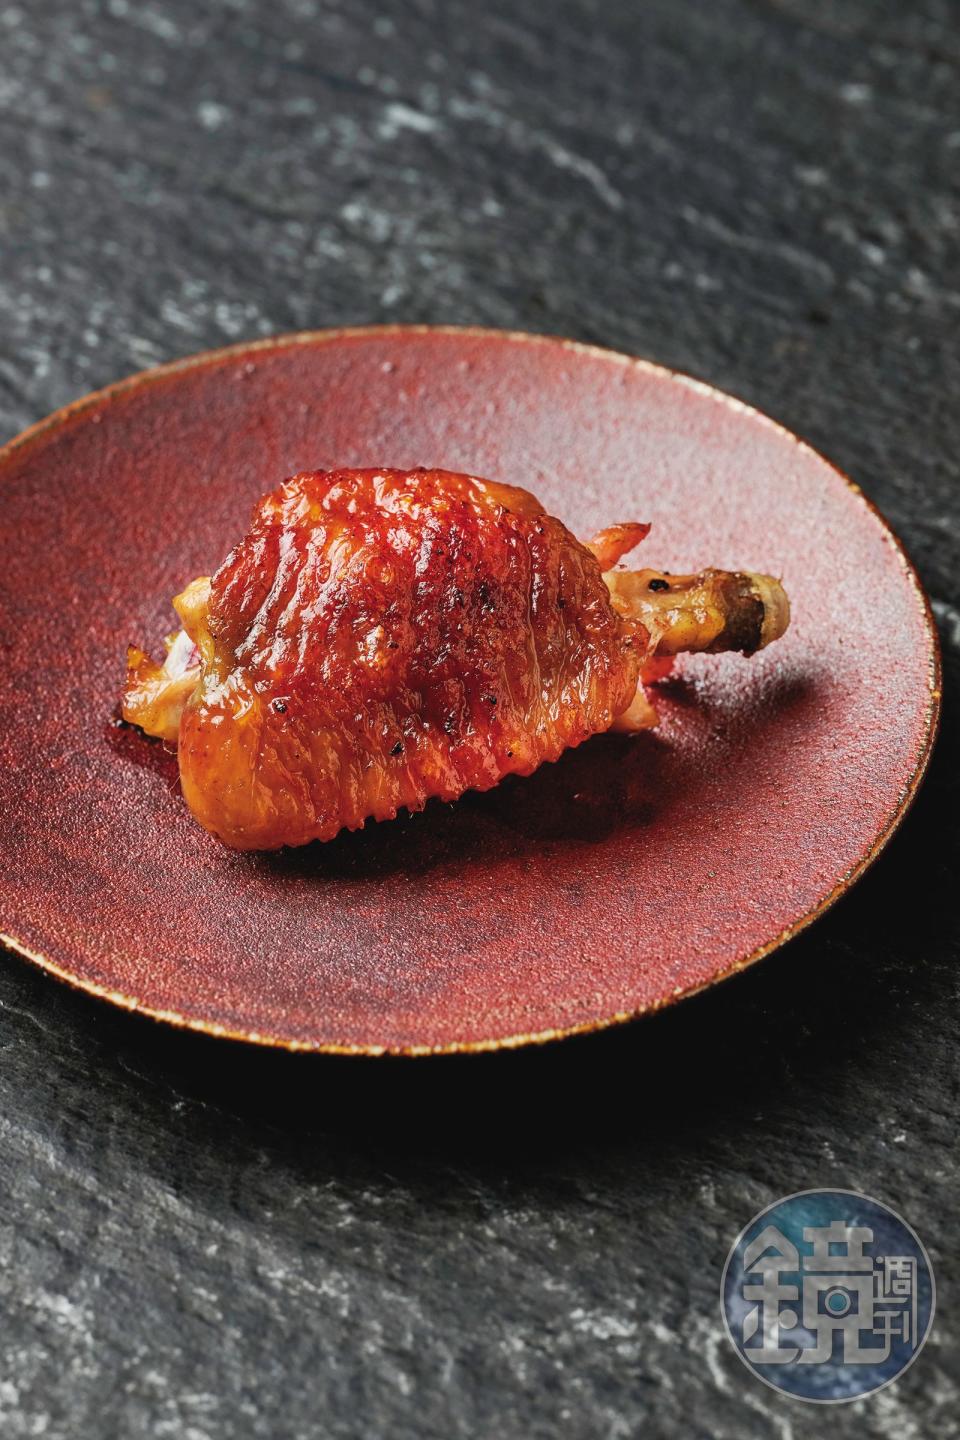 雞翅的燒烤火候非常出色，皮脆肉甜。